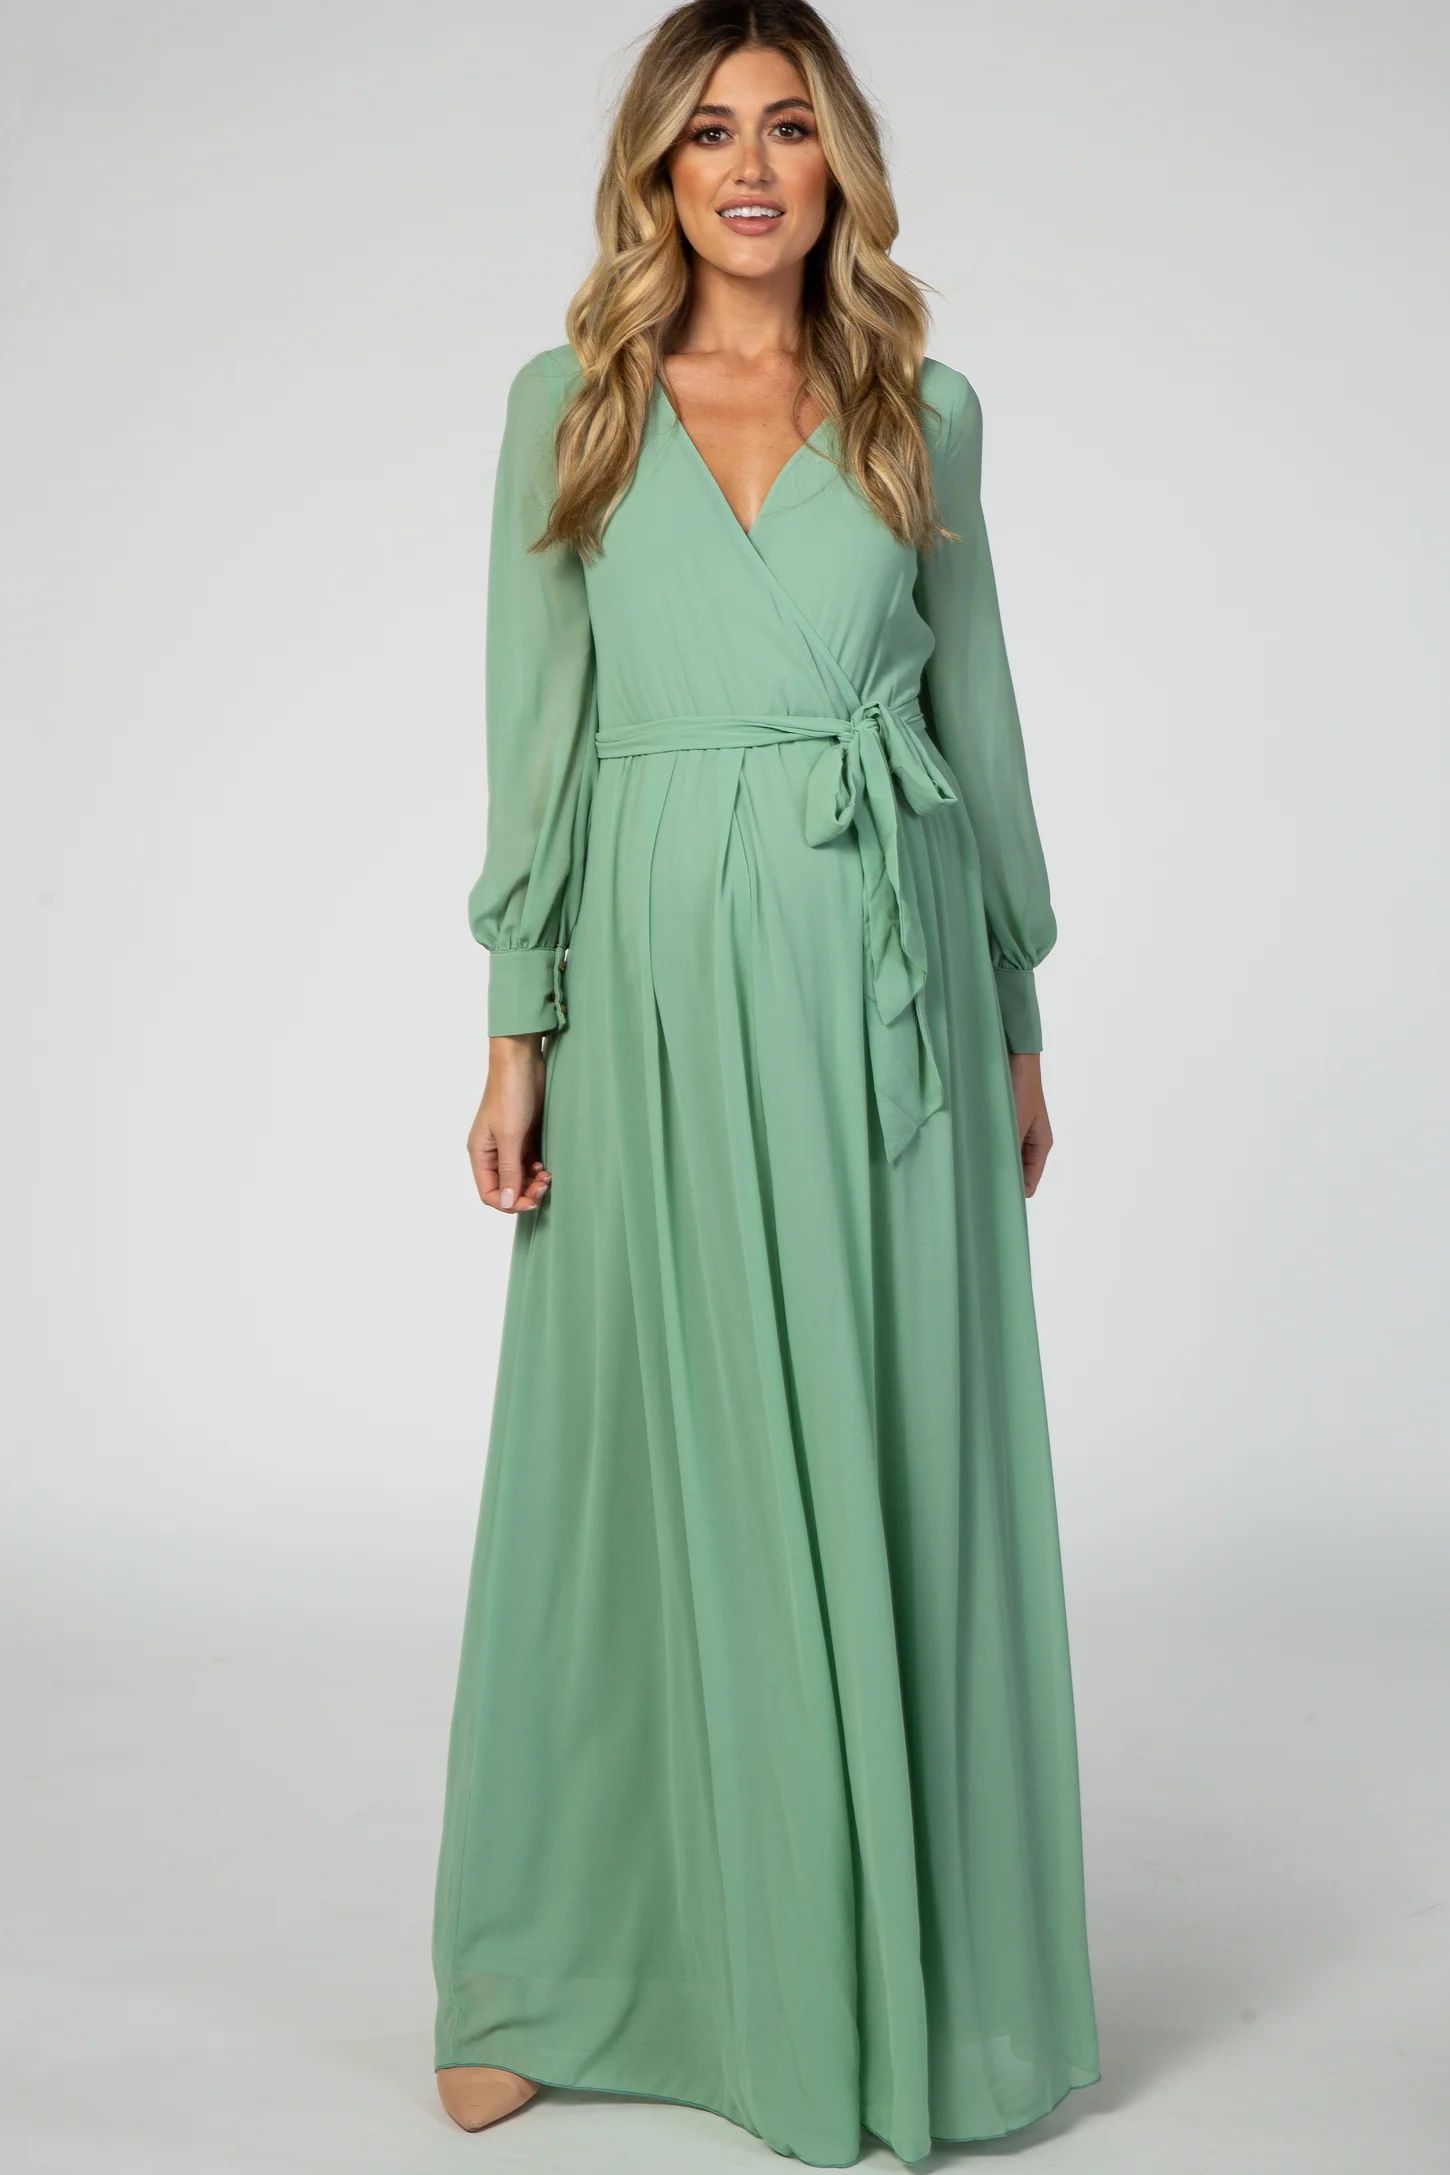 Mint Green Chiffon Maternity Maxi Dress | PinkBlush Maternity